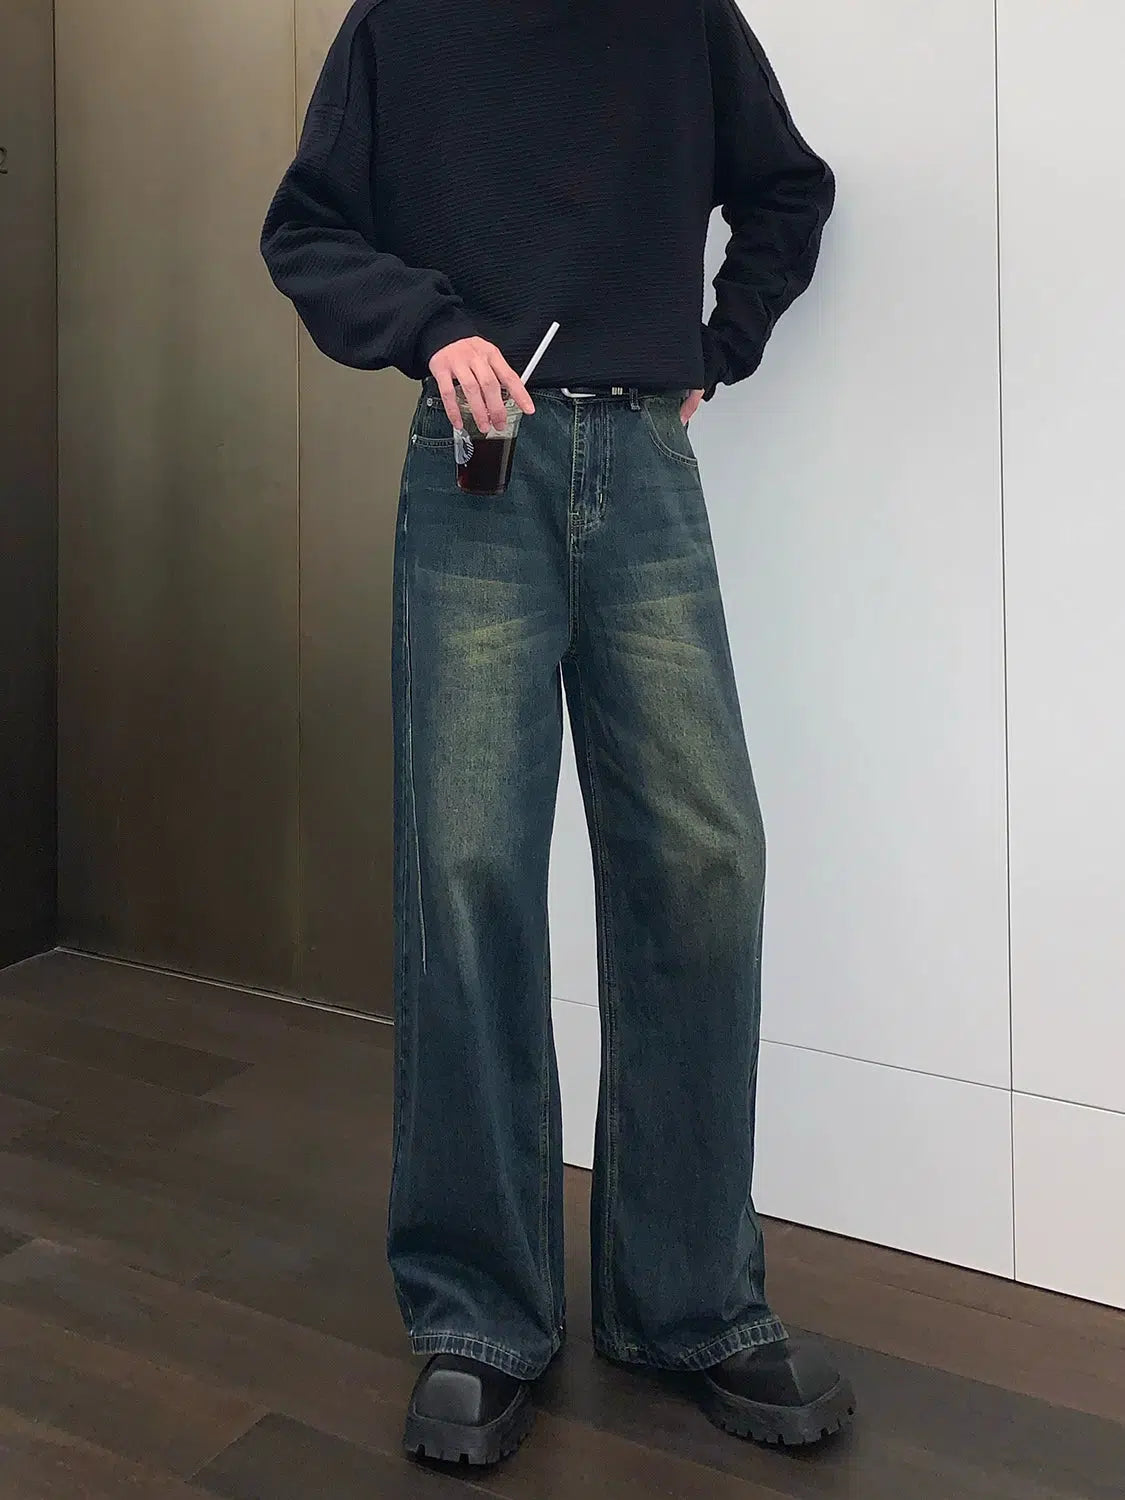 High Waist Straight Leg Jeans – The Korean Fashion